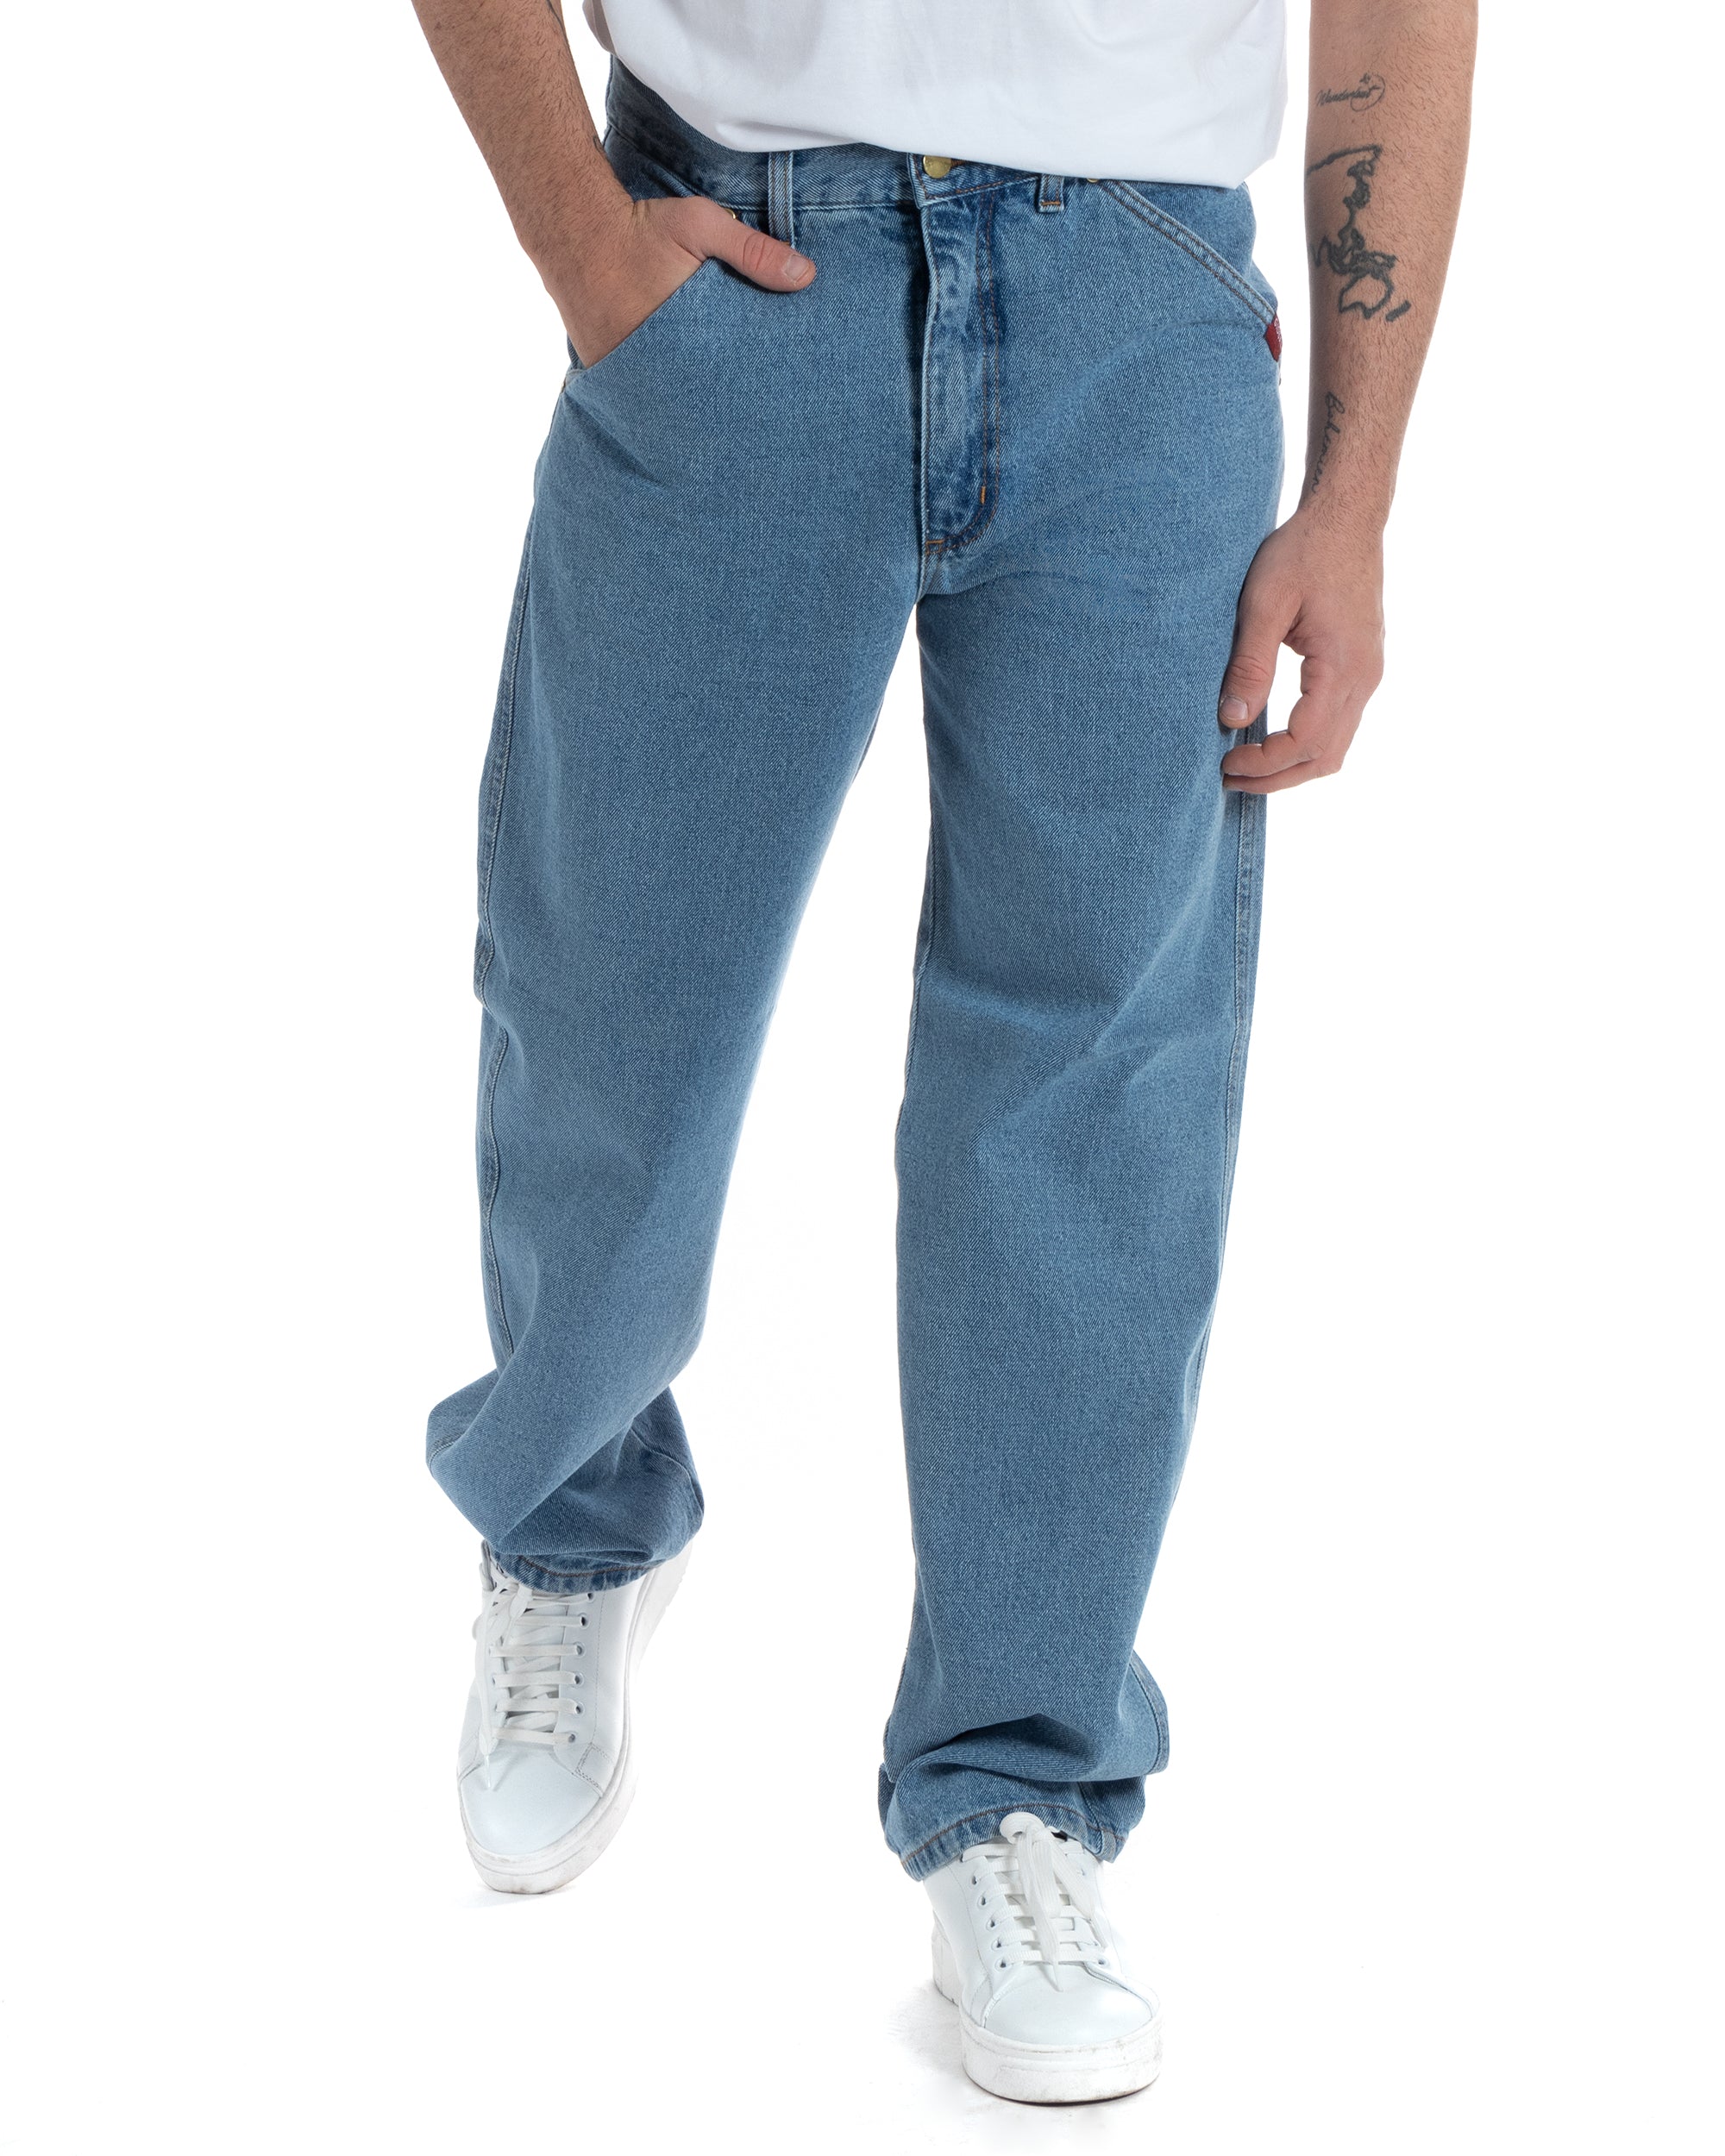 Pantaloni Jeans Uomo Baggy Fit Basic Denim Chiaro GIOSAL-P5989A